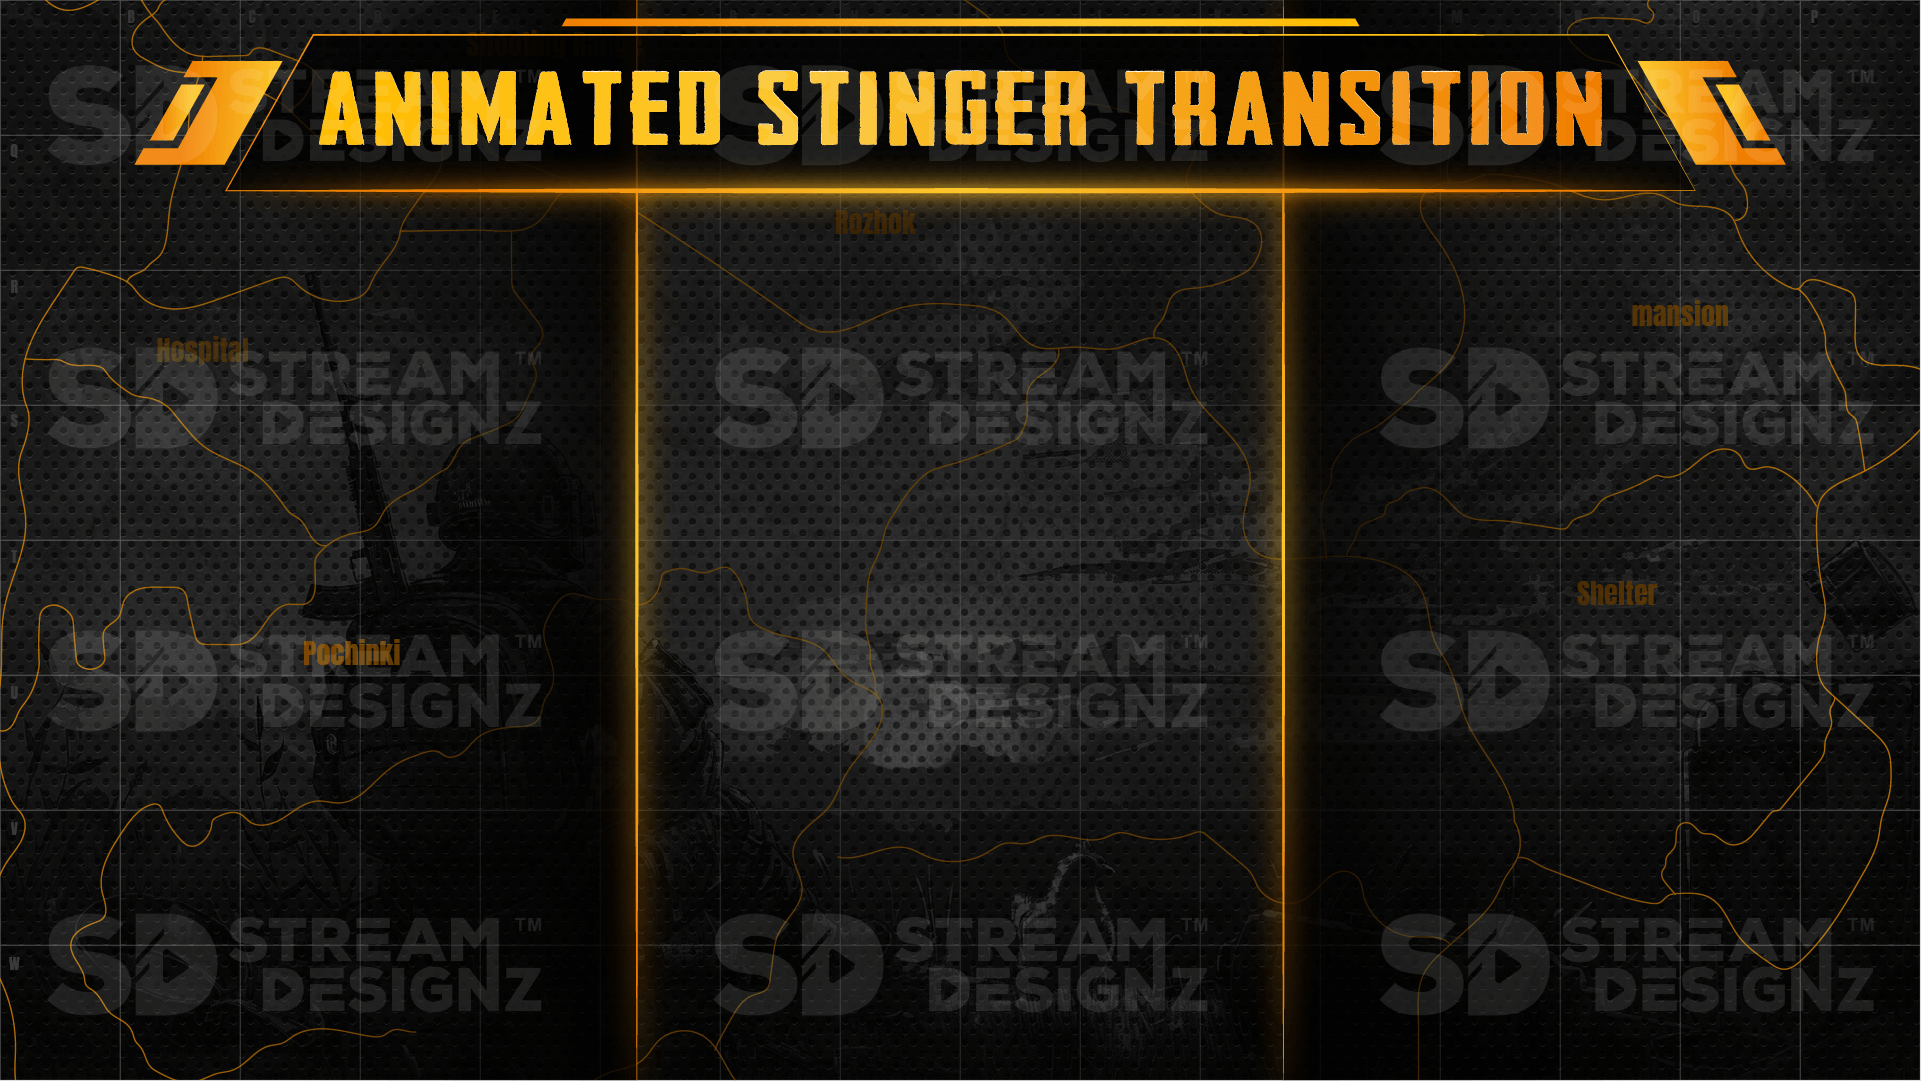 Ultimate stream package stinger transition battleground stream designz